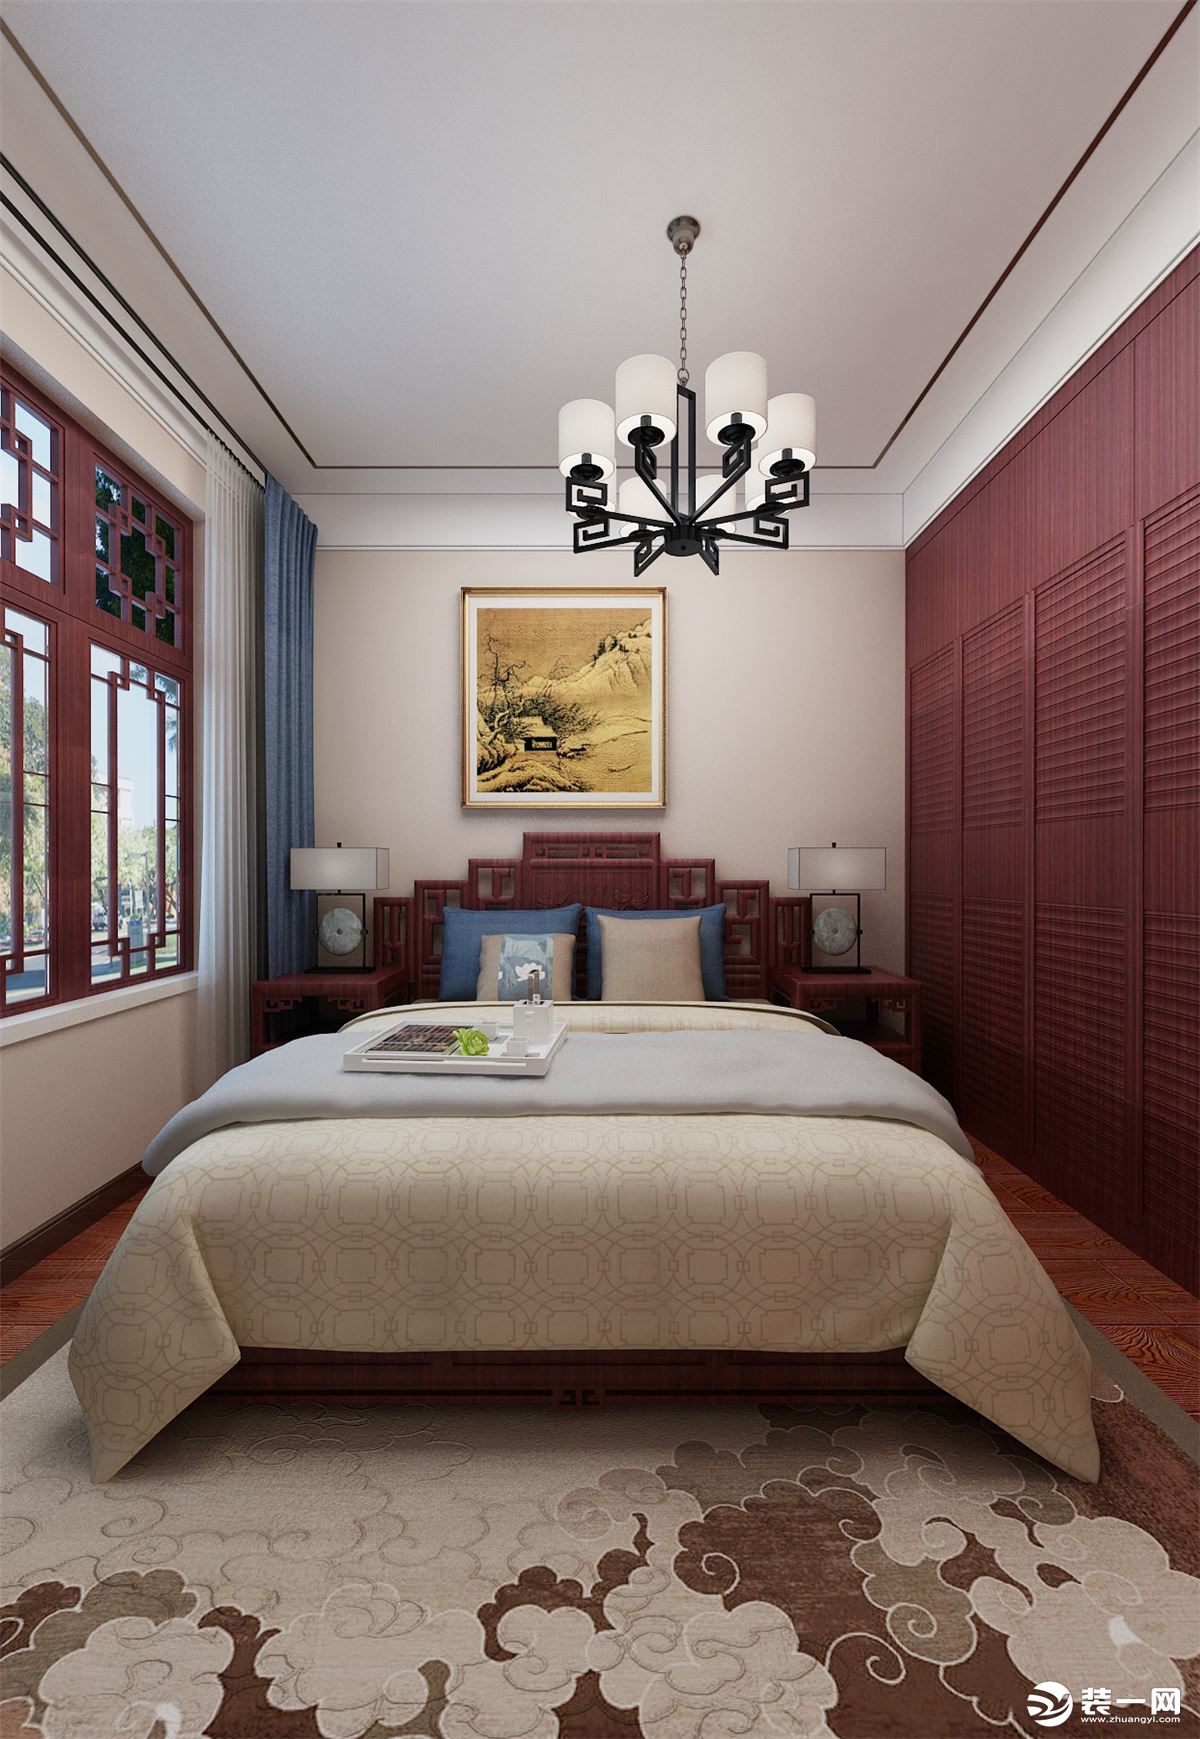 卧室家具采用与客餐厅相呼应的红木家具，吊顶采用双层石膏板加木线条的设计，简洁大气。背景墙采用壁纸加挂